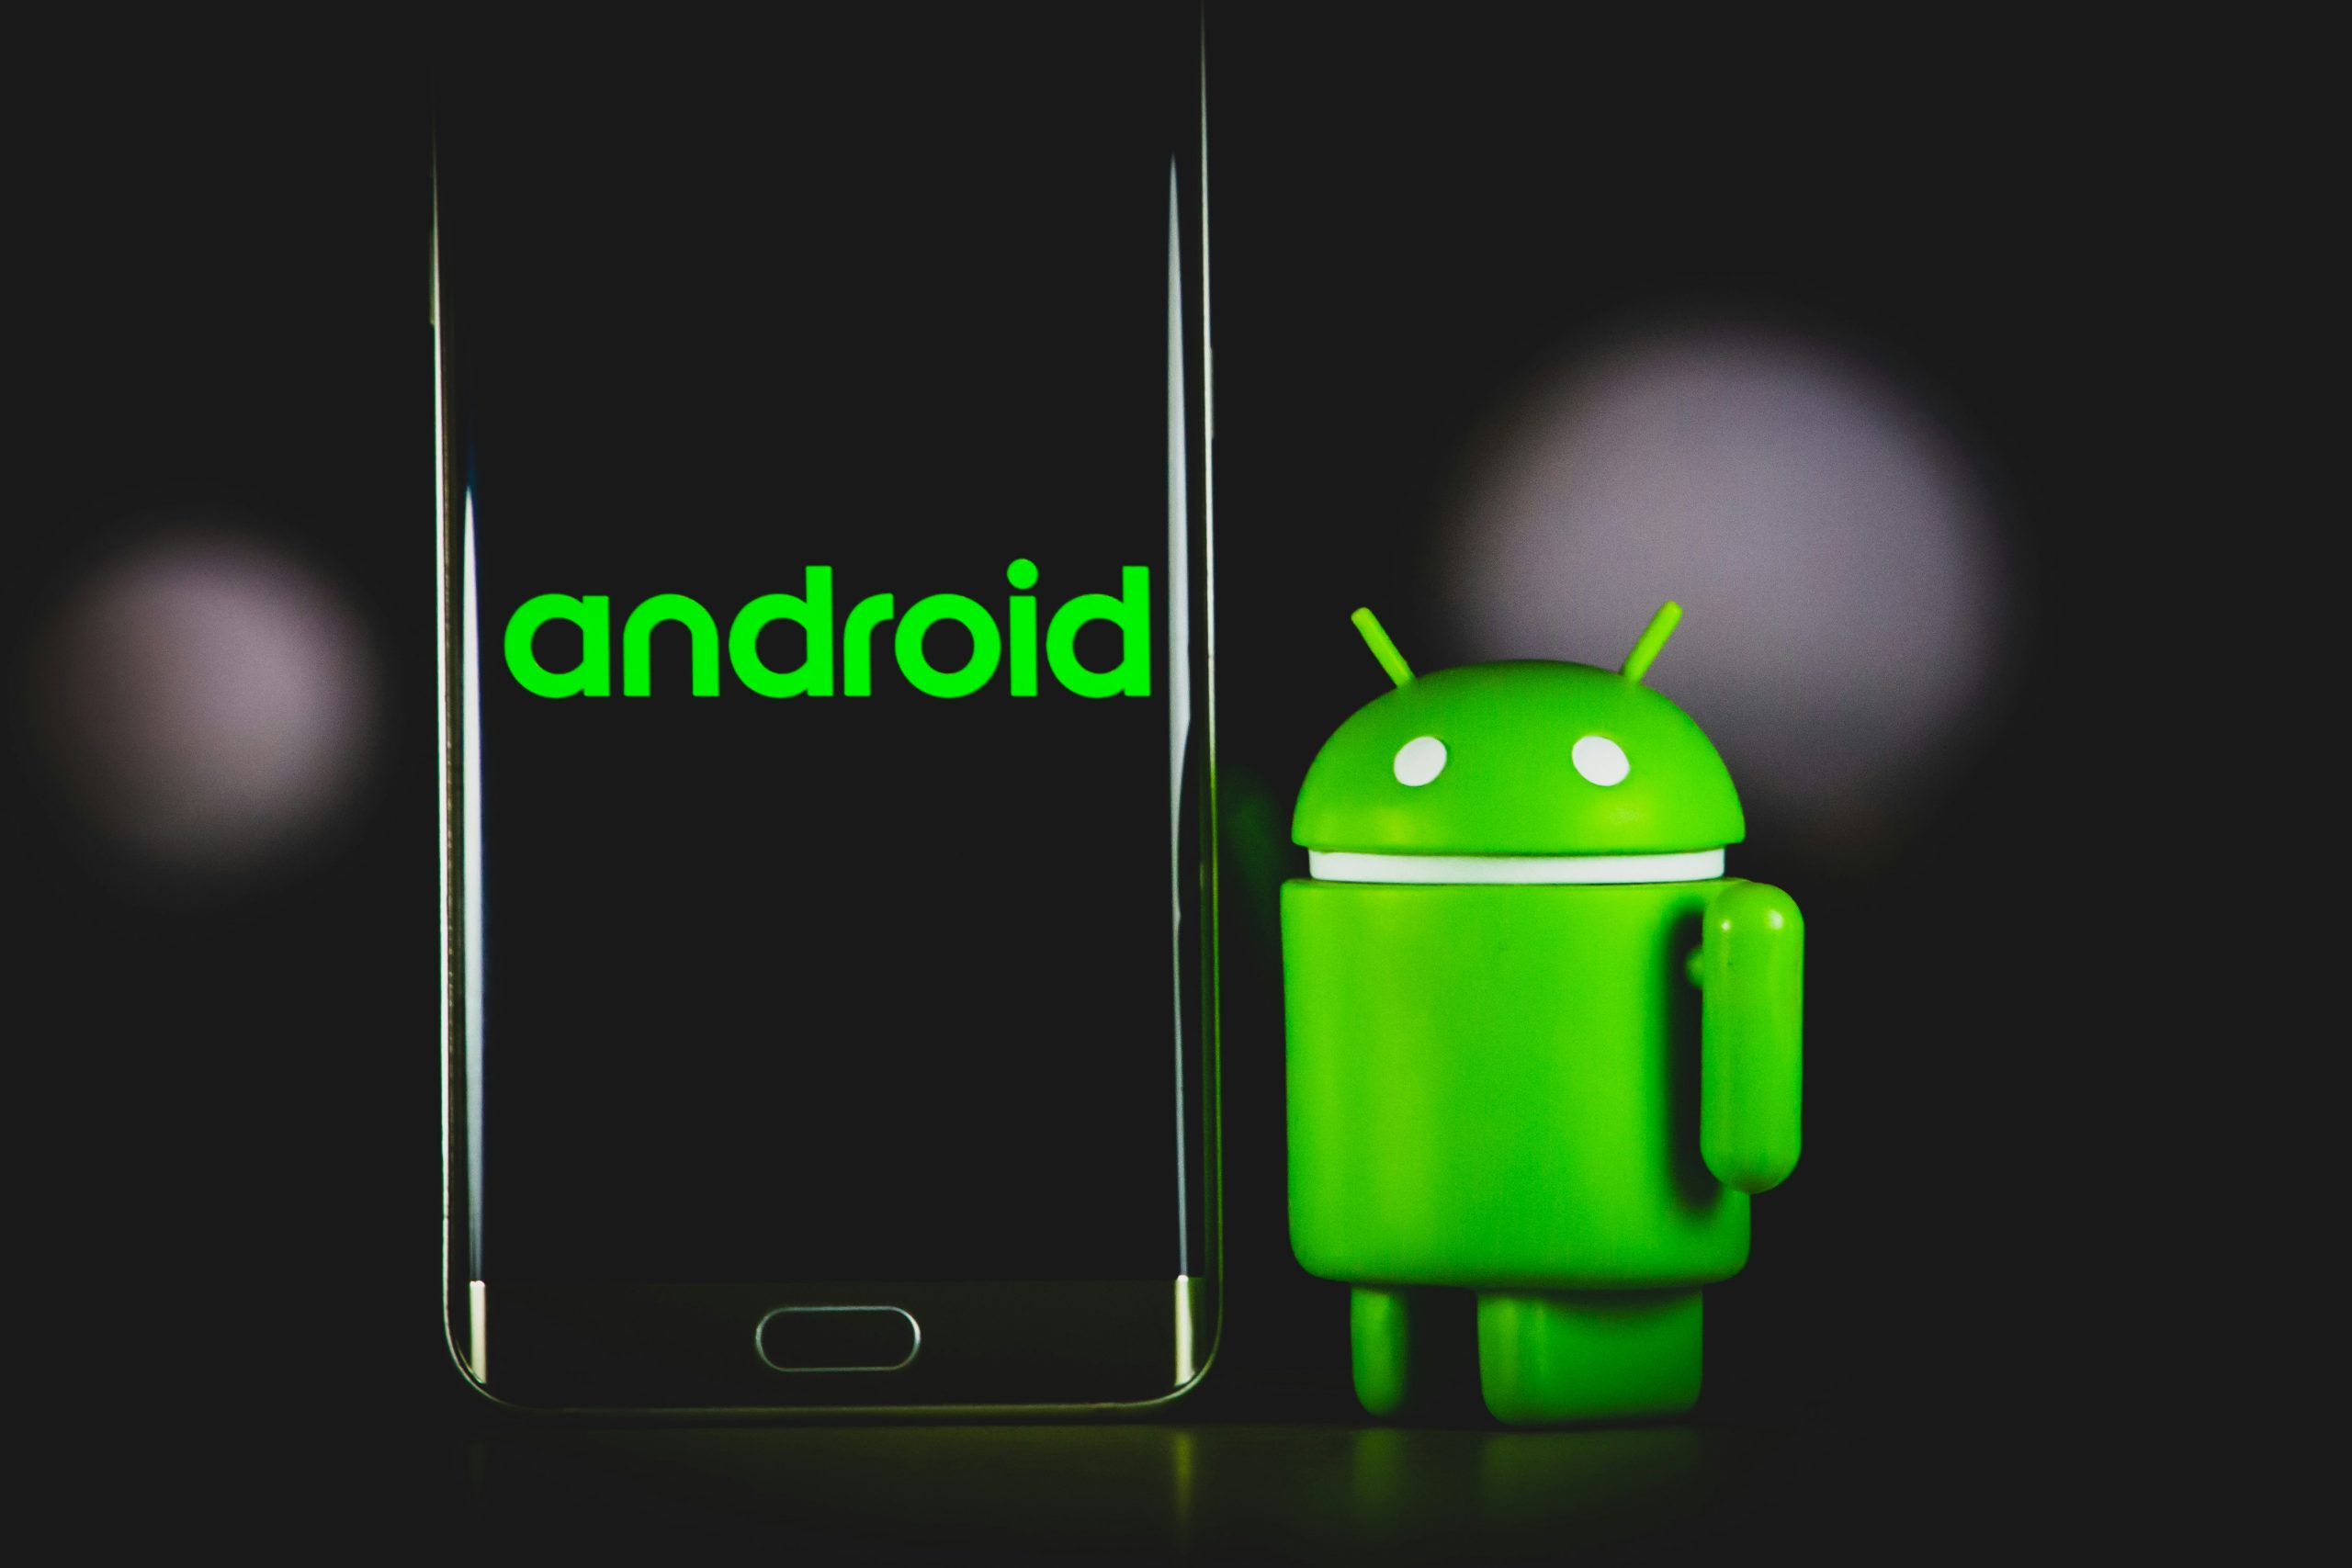 Pengguna Android Di Singapura Akan Dihalang Daripada Memasang Aplikasi Secara Muat-Sisi (Sideloading)